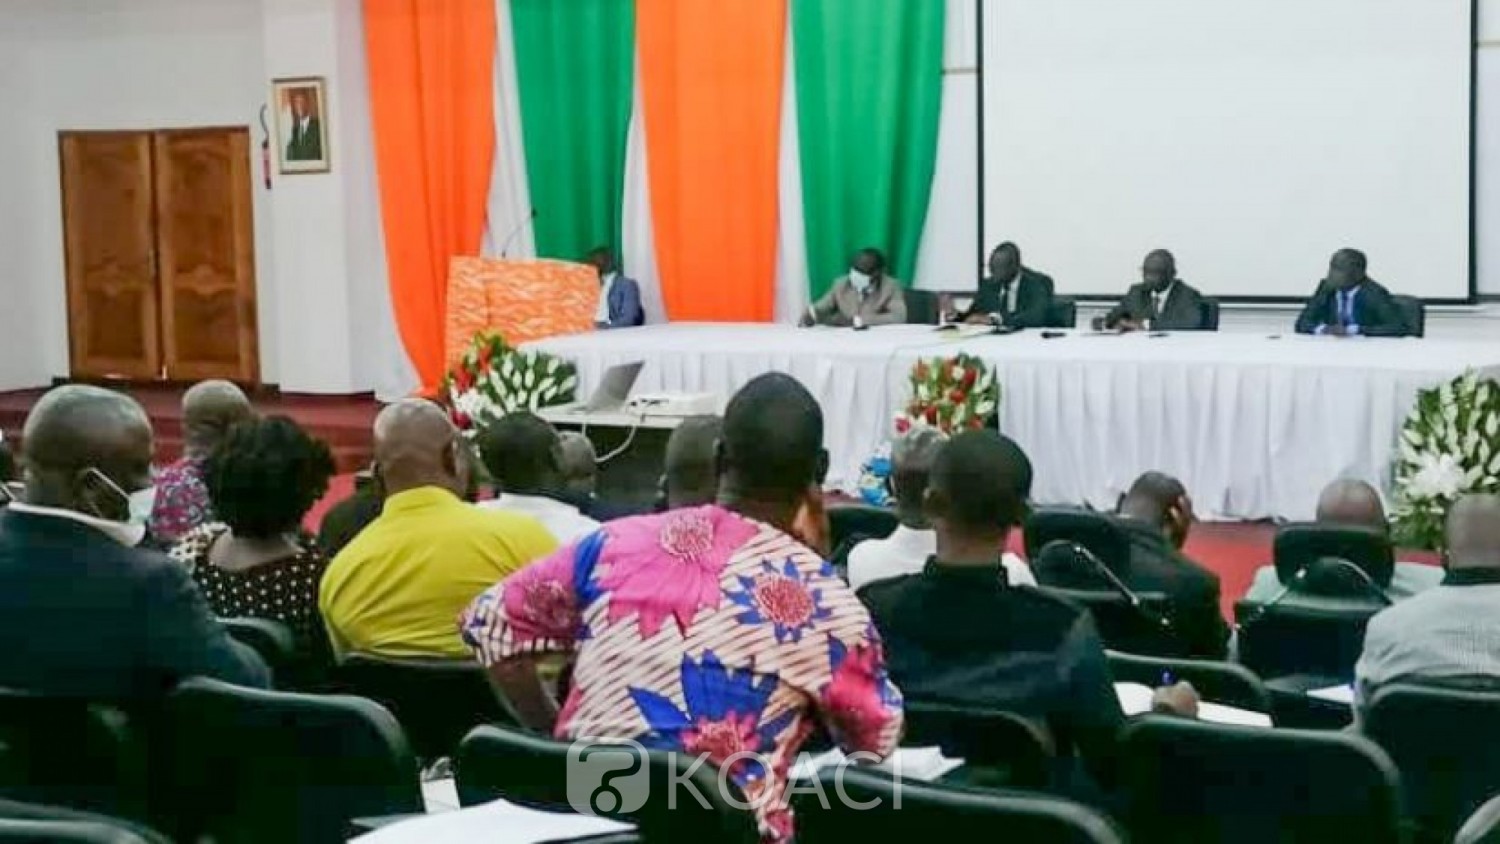 Côte d'Ivoire : Etats Généraux de l'Ecole, les syndicats invités à saisir cette opportunité pour faire des propositions